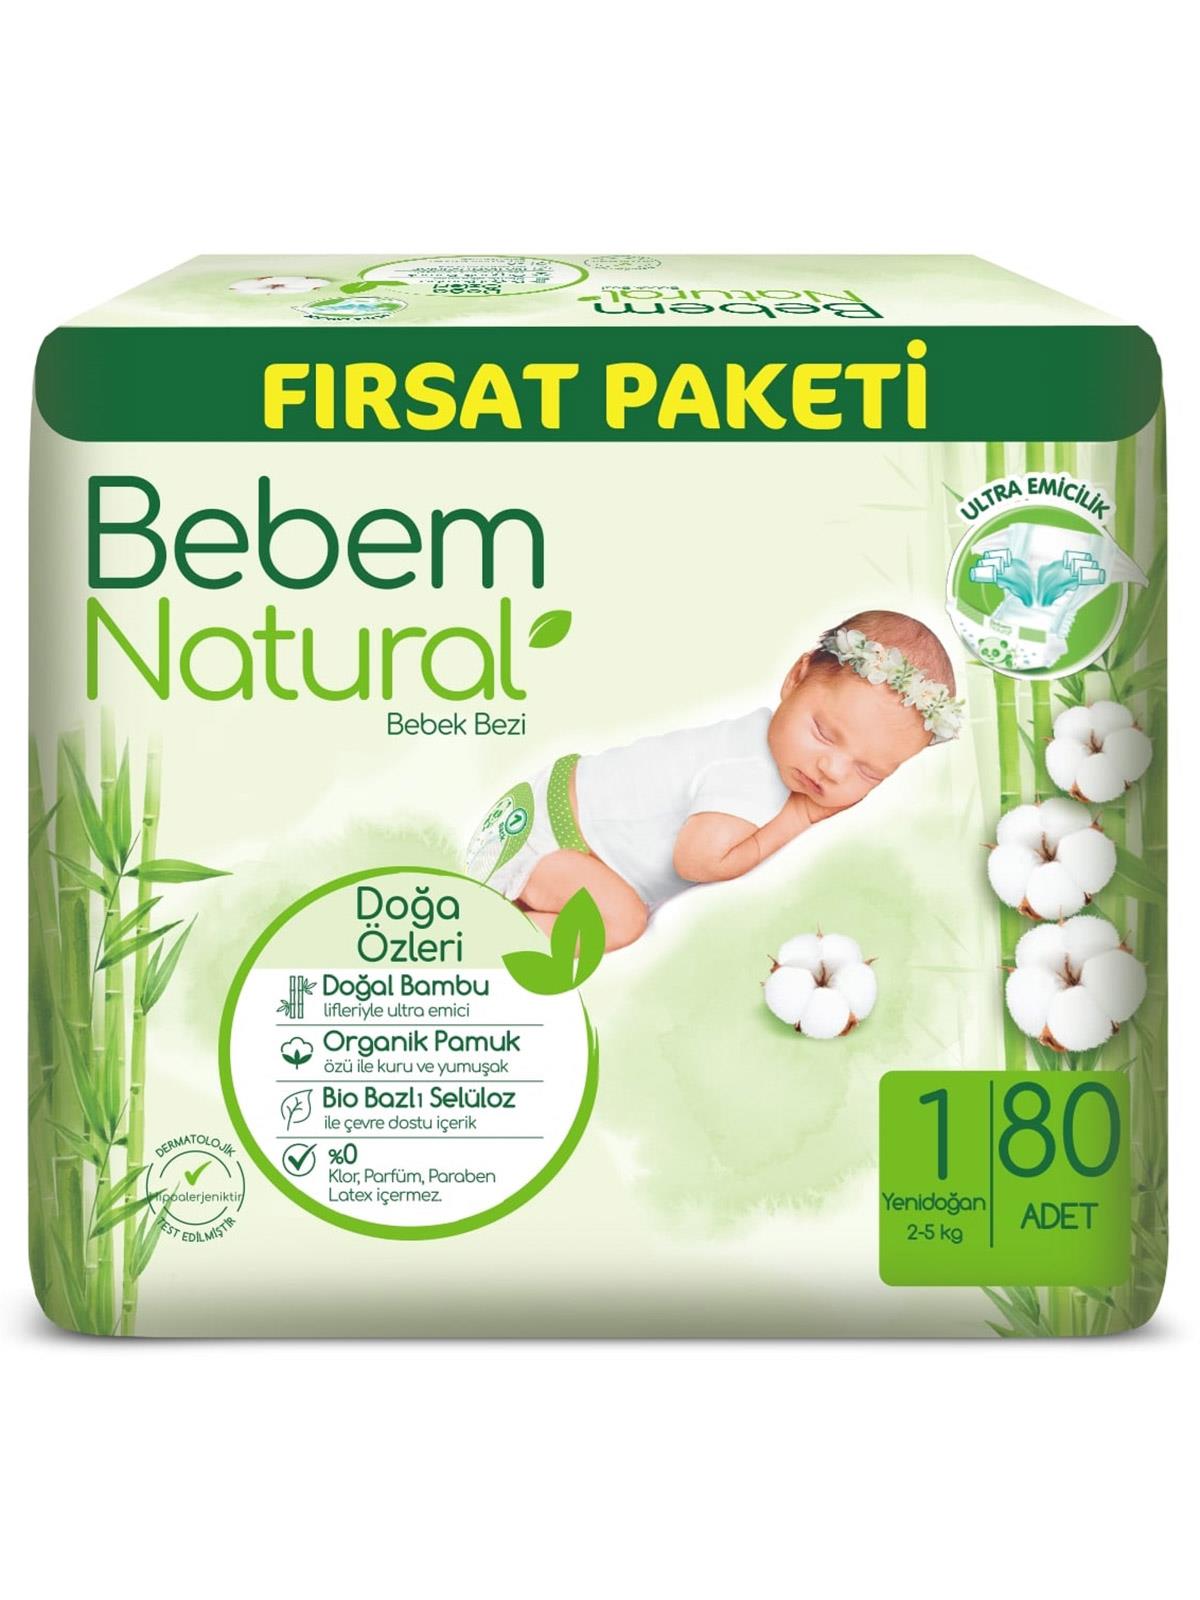 Bebem Natural Bebek Bezi Fırsat Paketi 1 Beden Yenidoğan 80 Adet